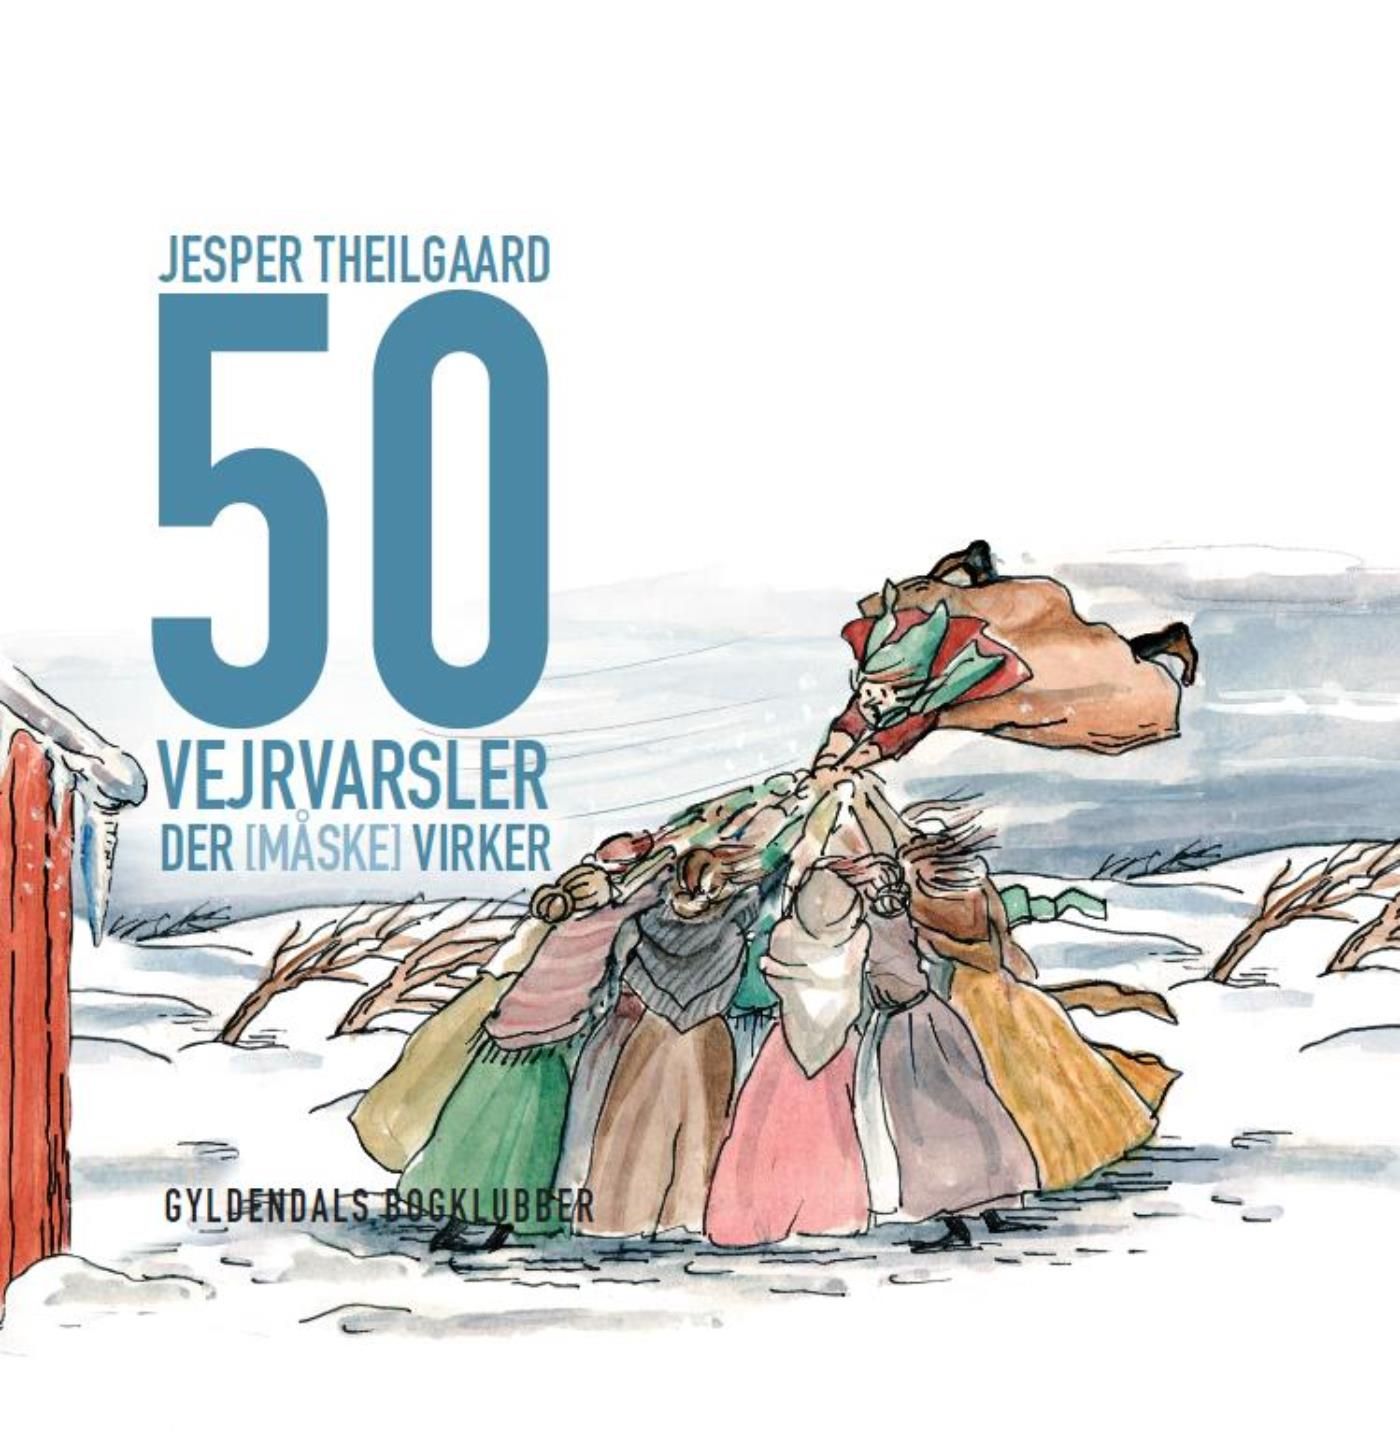 50 vejrvarsler der [måske] virker, e-bog af Jesper Theilgaard